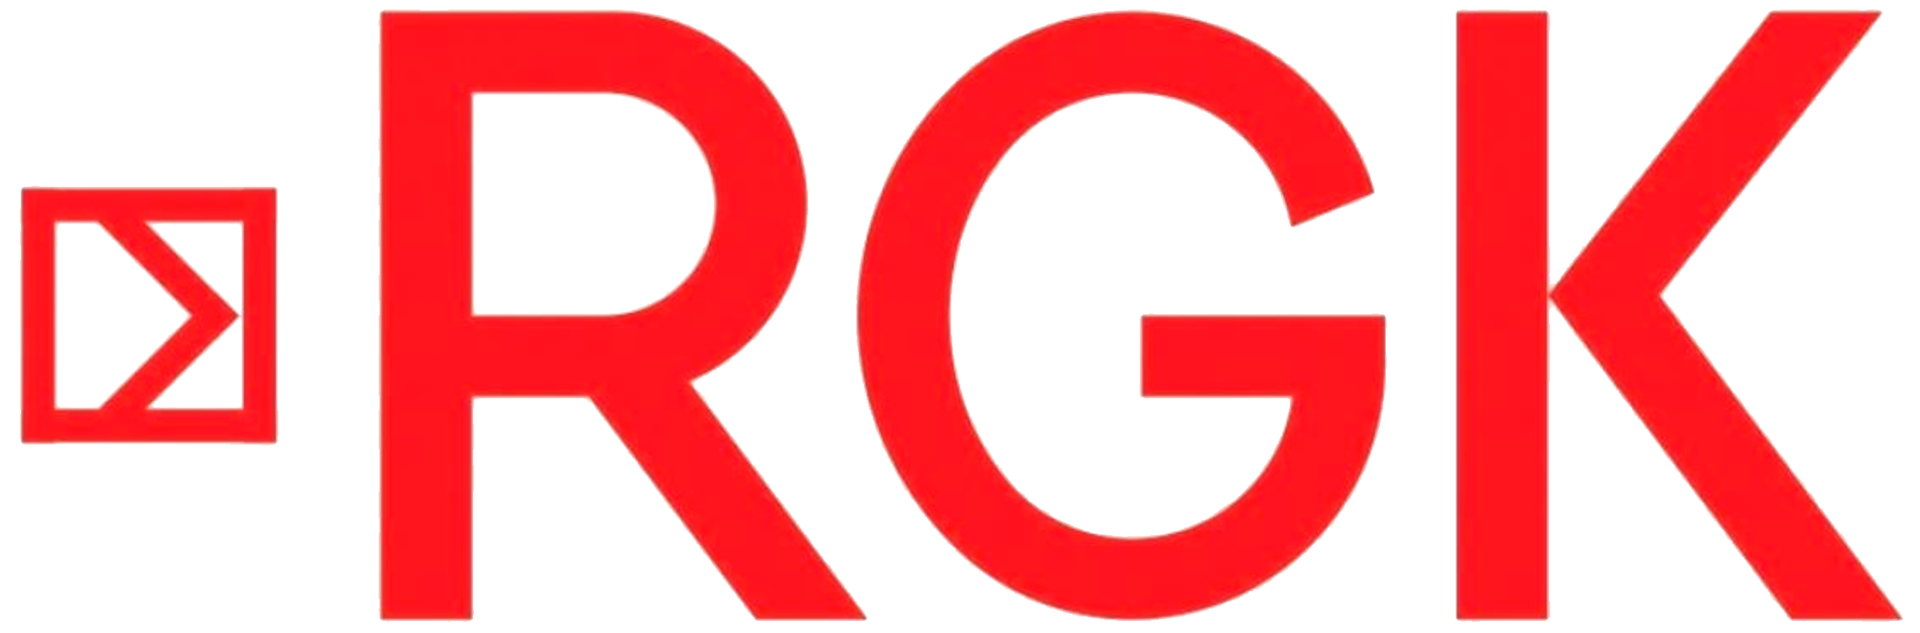 RGK-logo